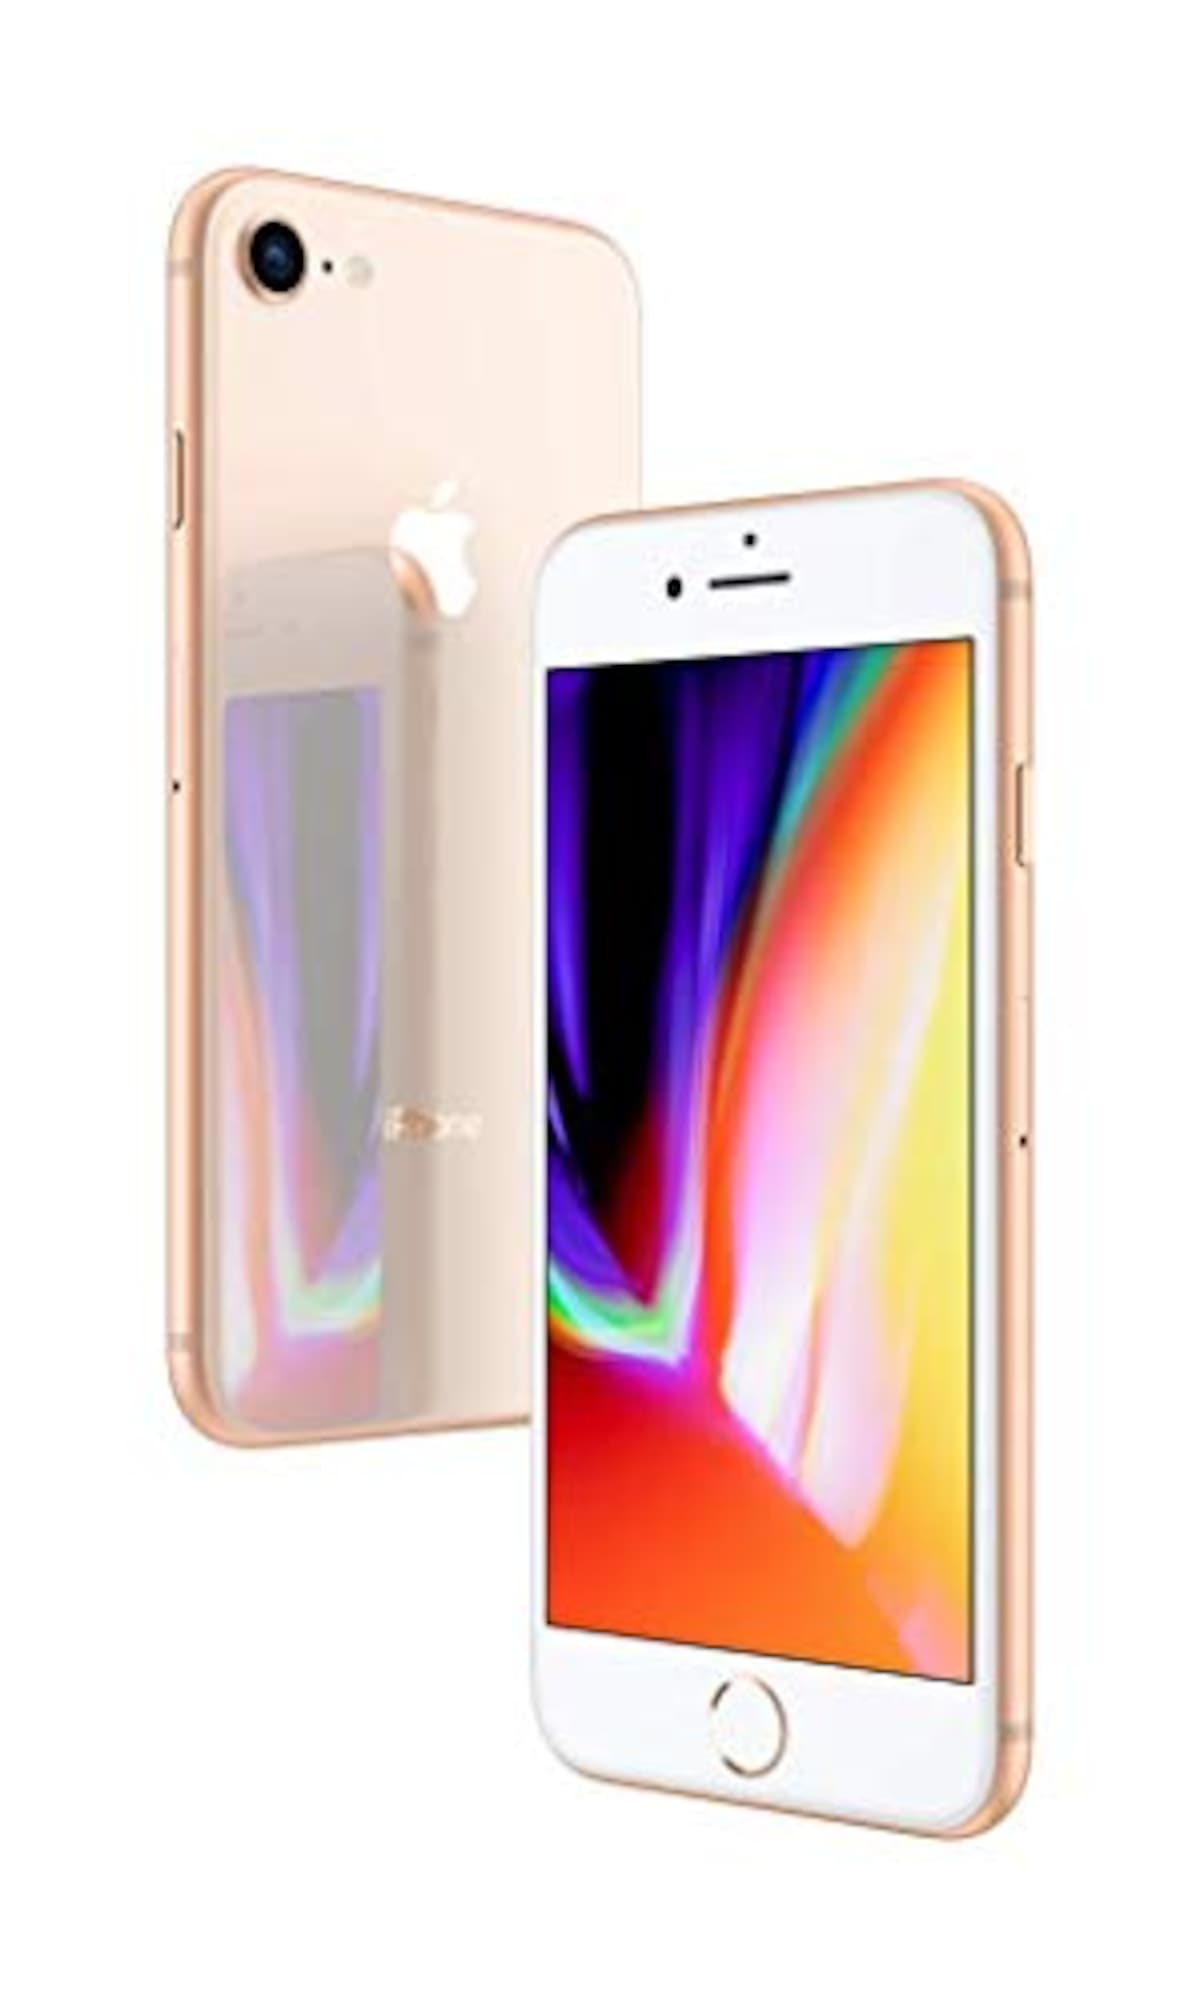 Apple（アップル）のiPhone 8 256GB ゴールド SIMフリー (整備済み品) | 価格比較・レビュー評価 - Best One